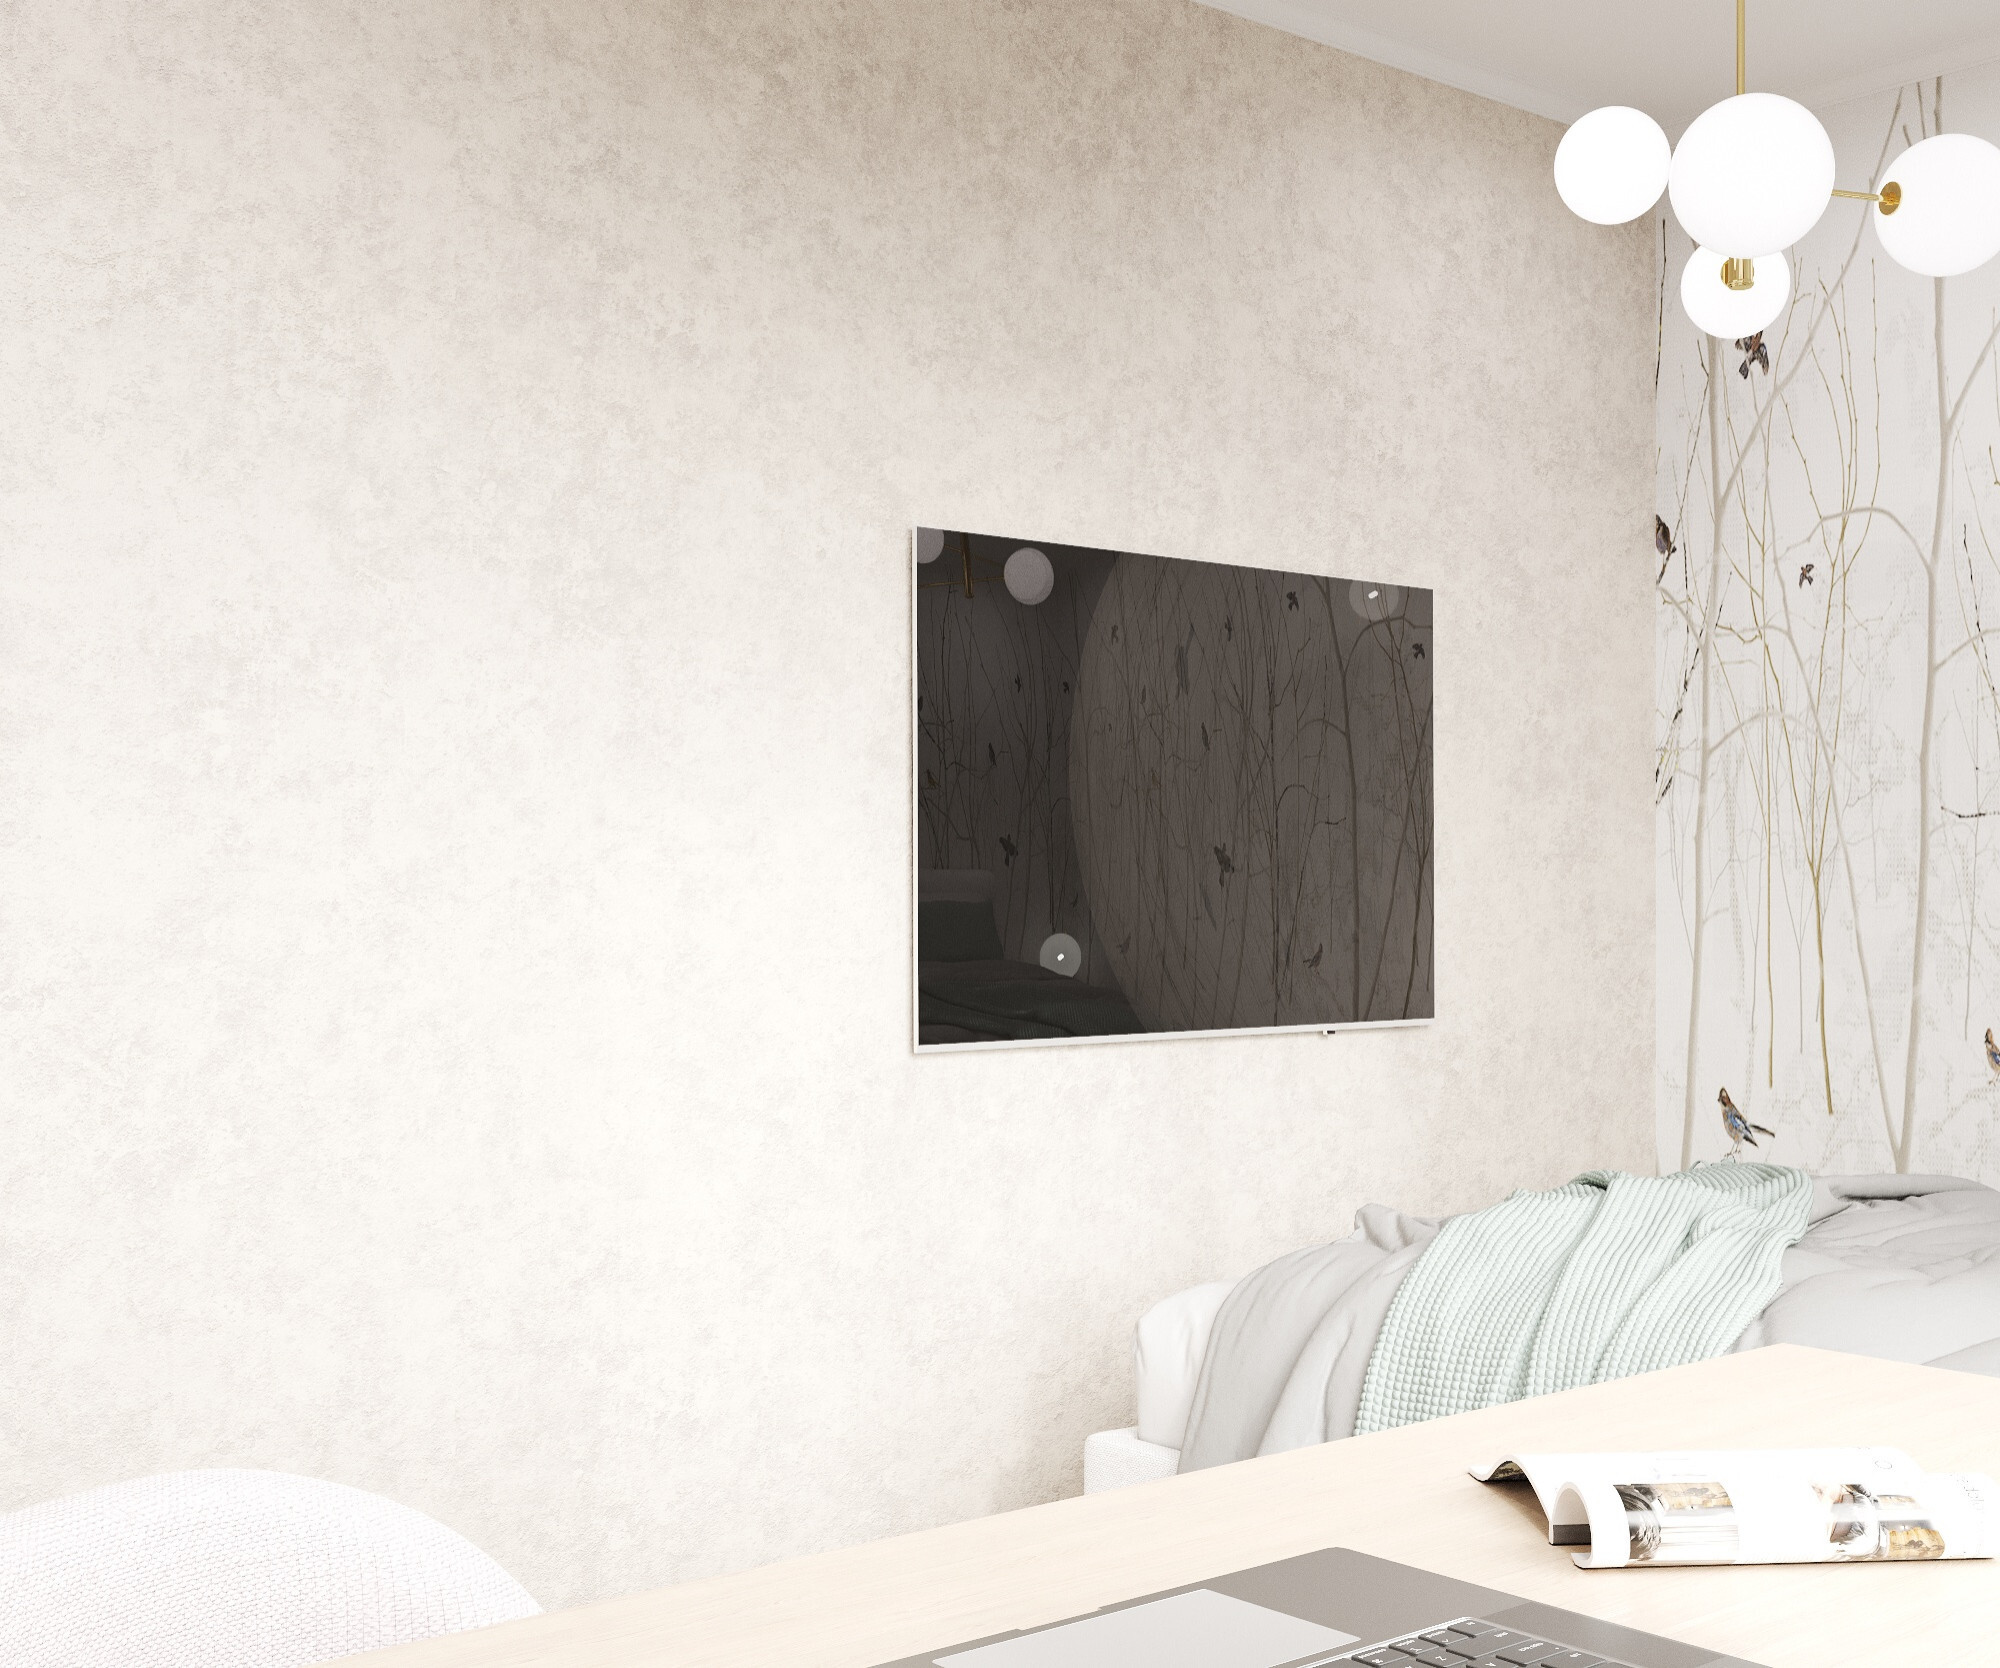 Интерьер спальни cтеной с телевизором, телевизором на стене, керамогранитом на стену с телевизором и подсветкой настенной в стиле лофт